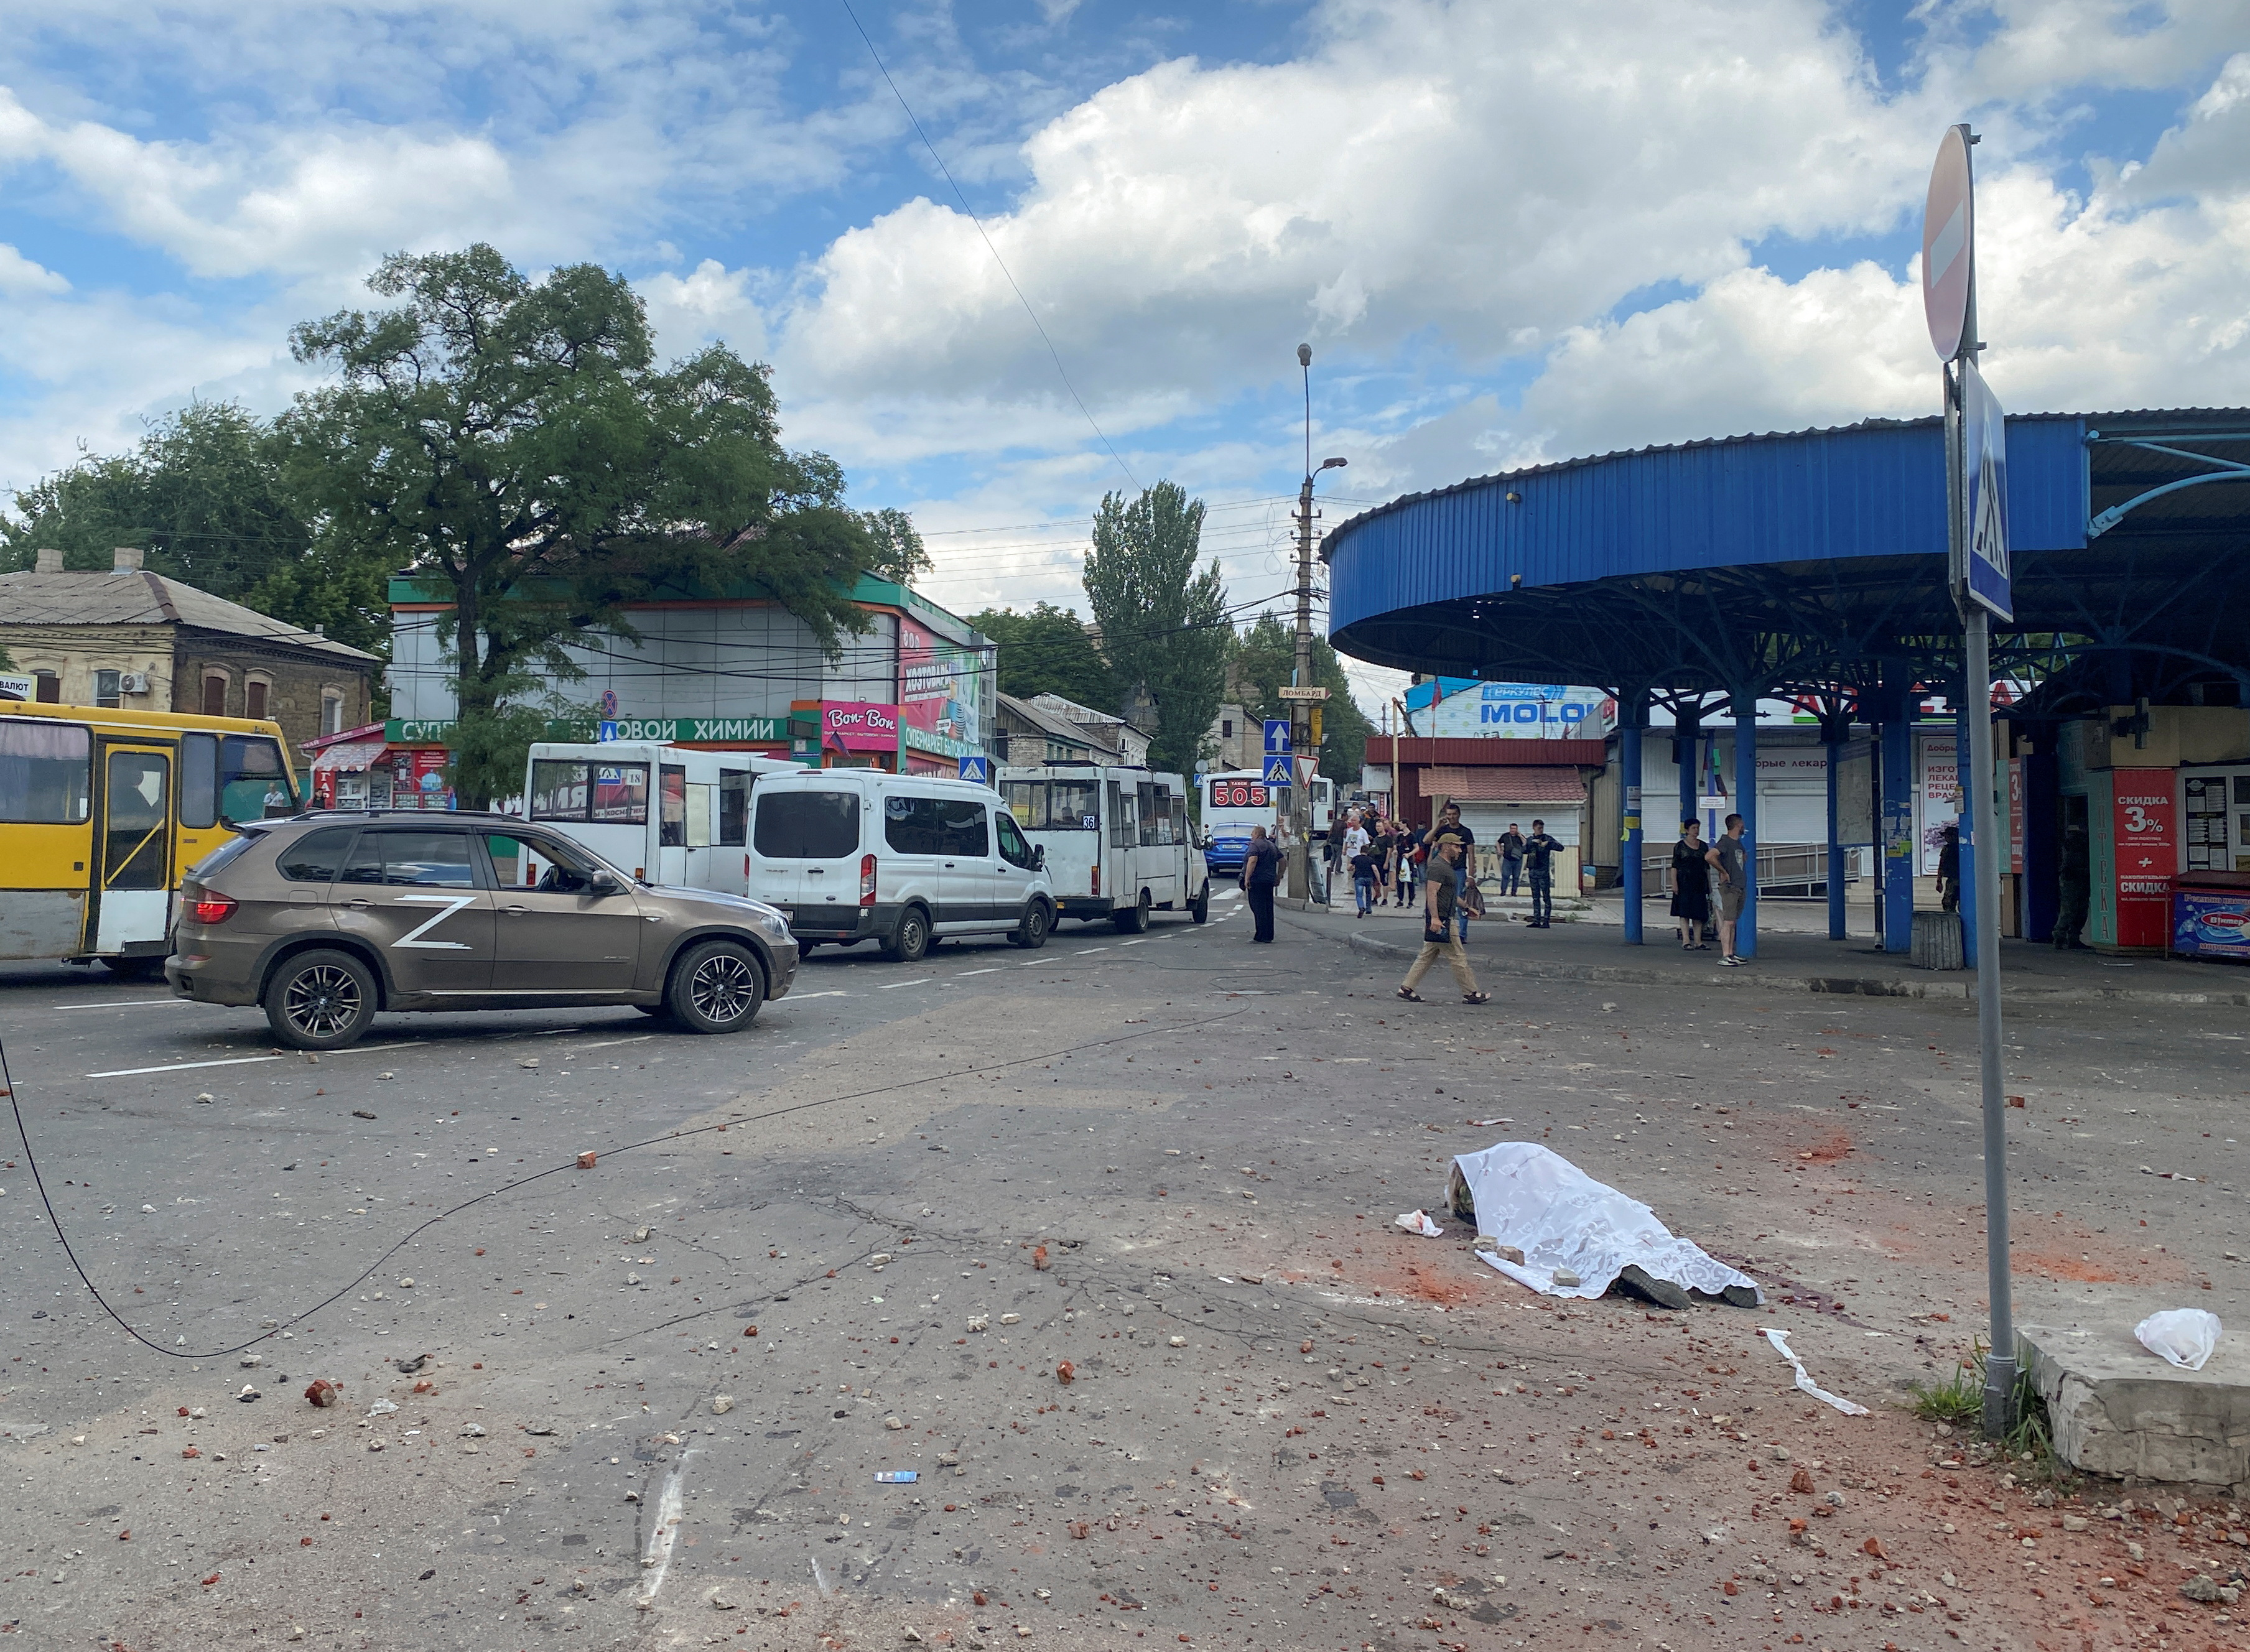 IMÁGENES SENSIBLES: El cuerpo de una persona muerta durante un bombardeo en la estación de autobuses yace en la calle en la ciudad de Donetsk, Ucrania, controlada por los separatistas, el 14 de julio de 2022.  REUTERS/Kazbek Basayev